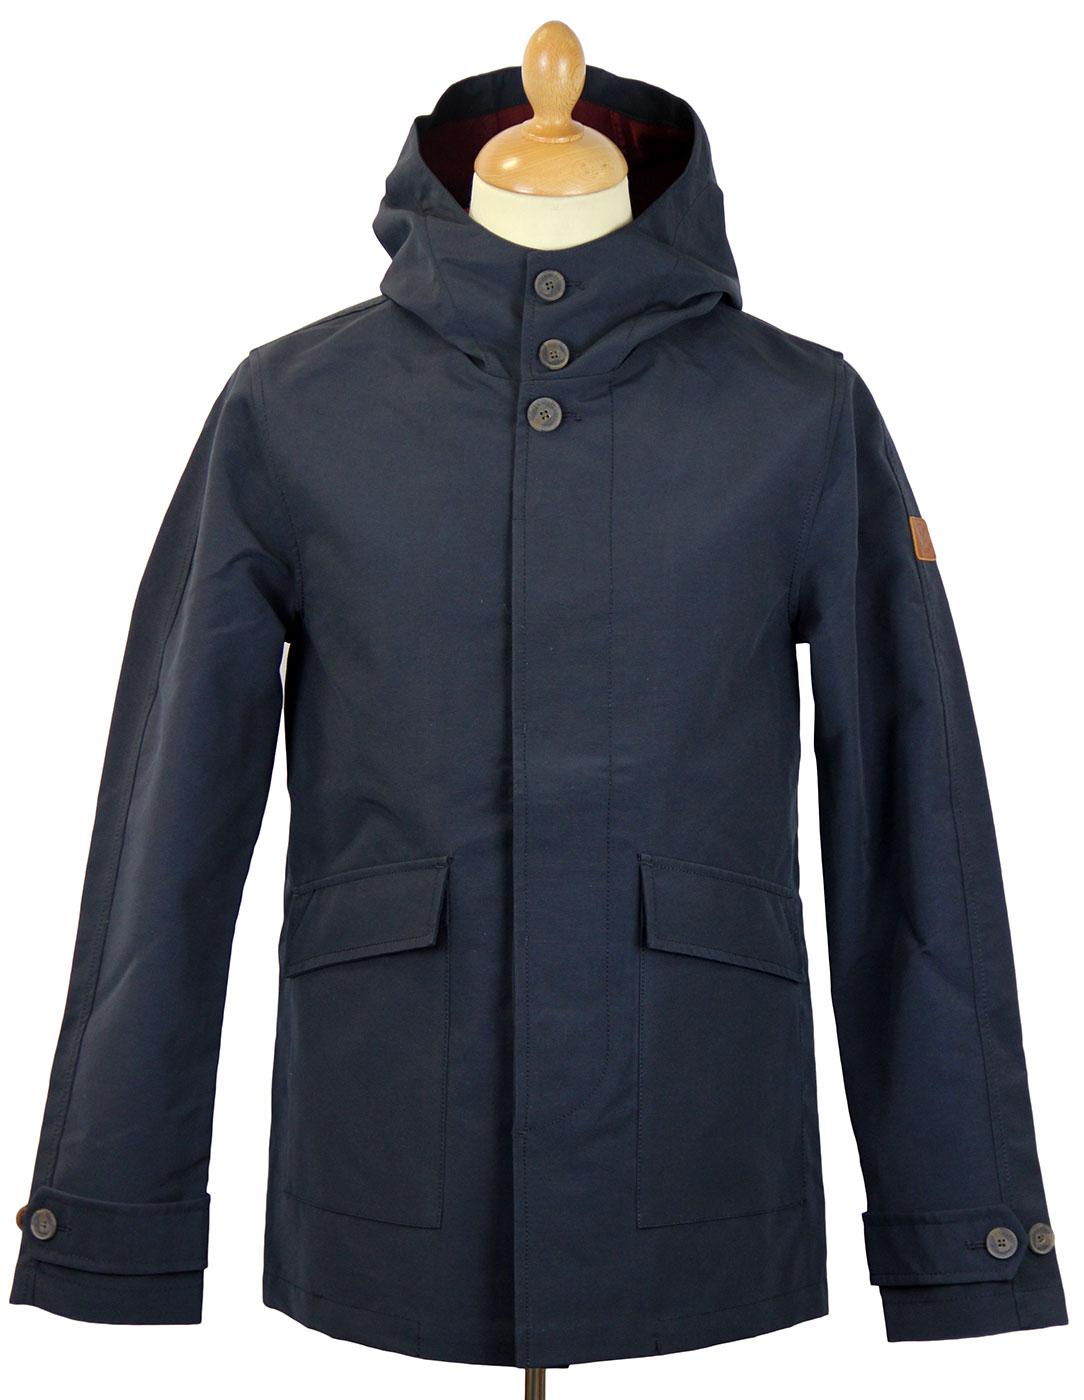 LYLE & SCOTT Mod Twill Hooded Parka Jacket (Navy)